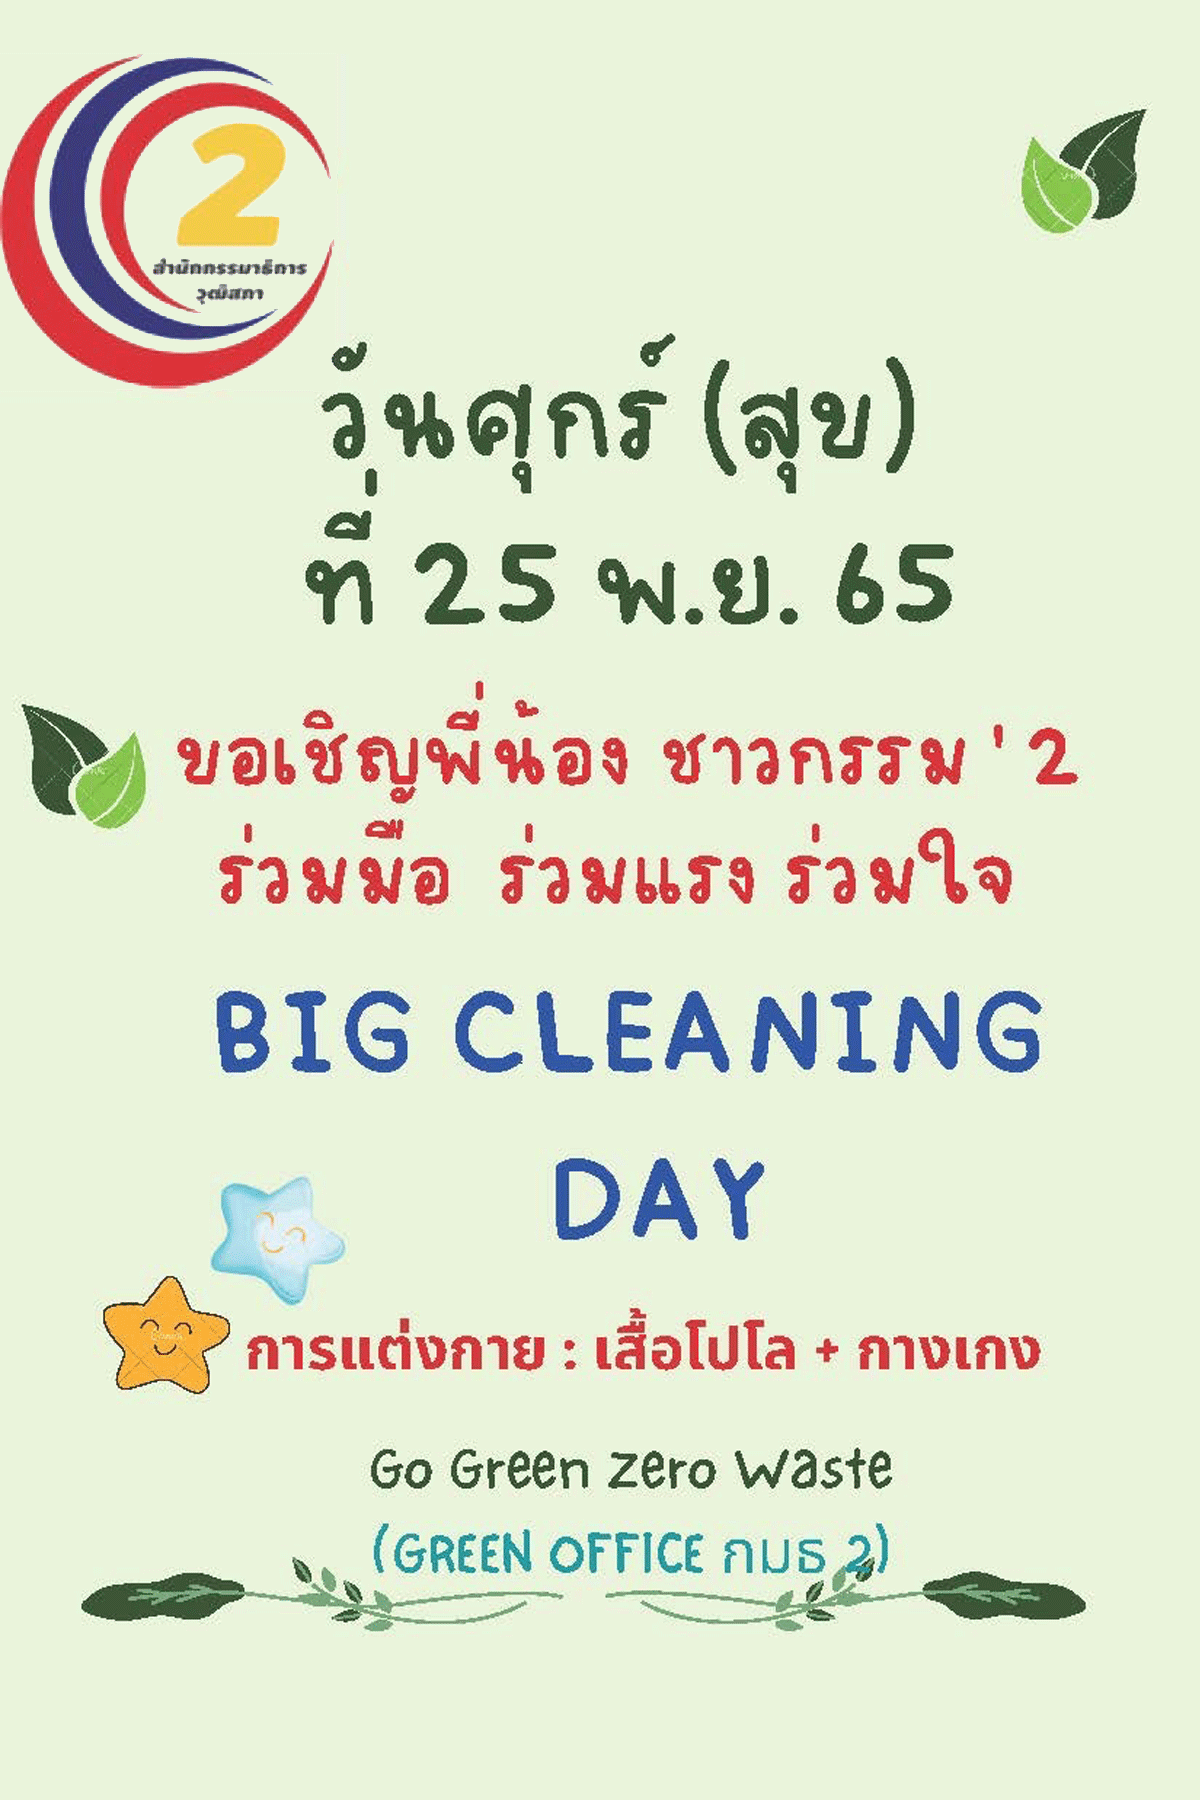 กิจกรรม Big Cleaning Day วันที่ 25 พ.ย. 65